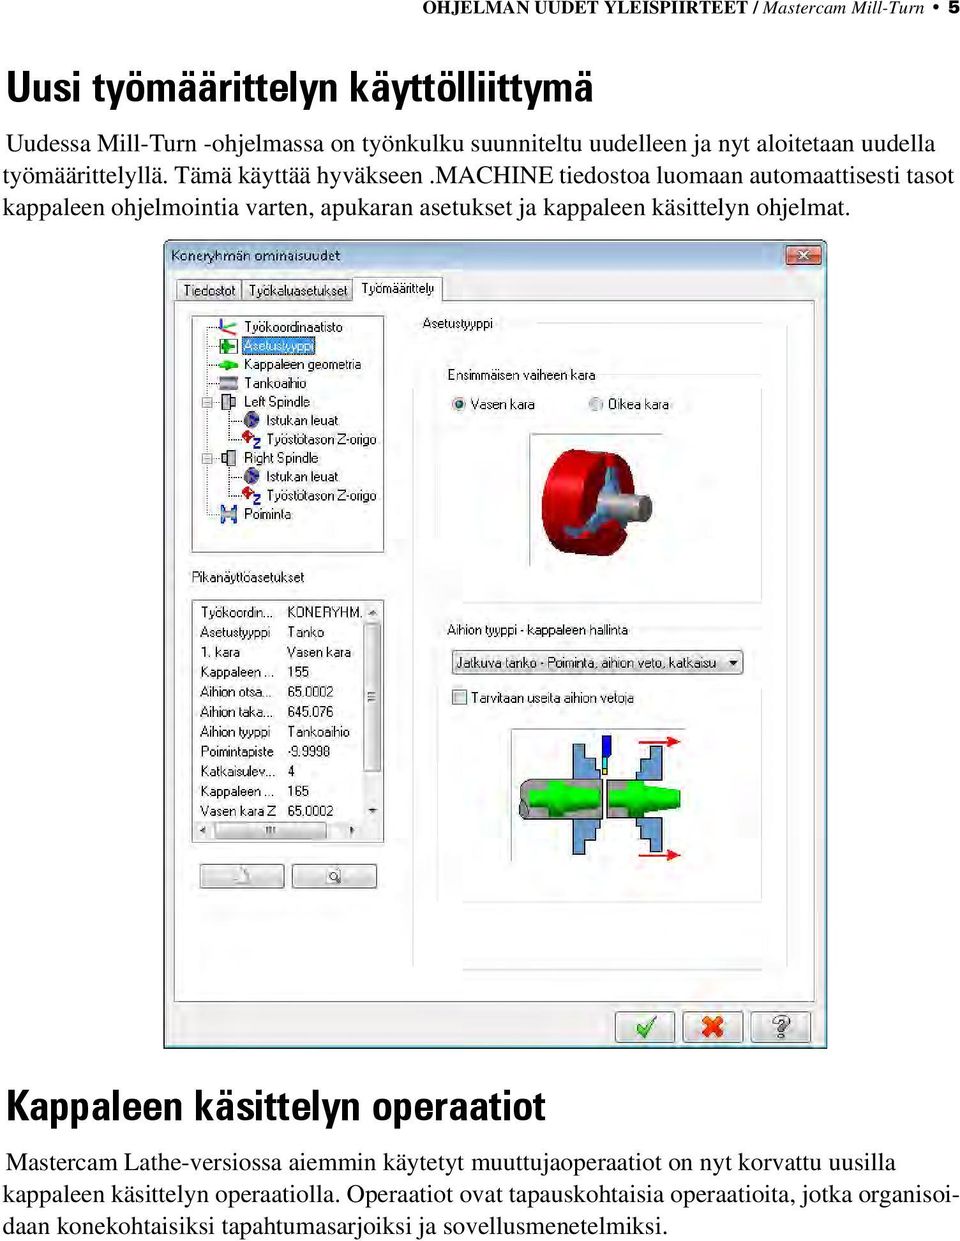 machine tiedostoa luomaan automaattisesti tasot kappaleen ohjelmointia varten, apukaran asetukset ja kappaleen käsittelyn ohjelmat.